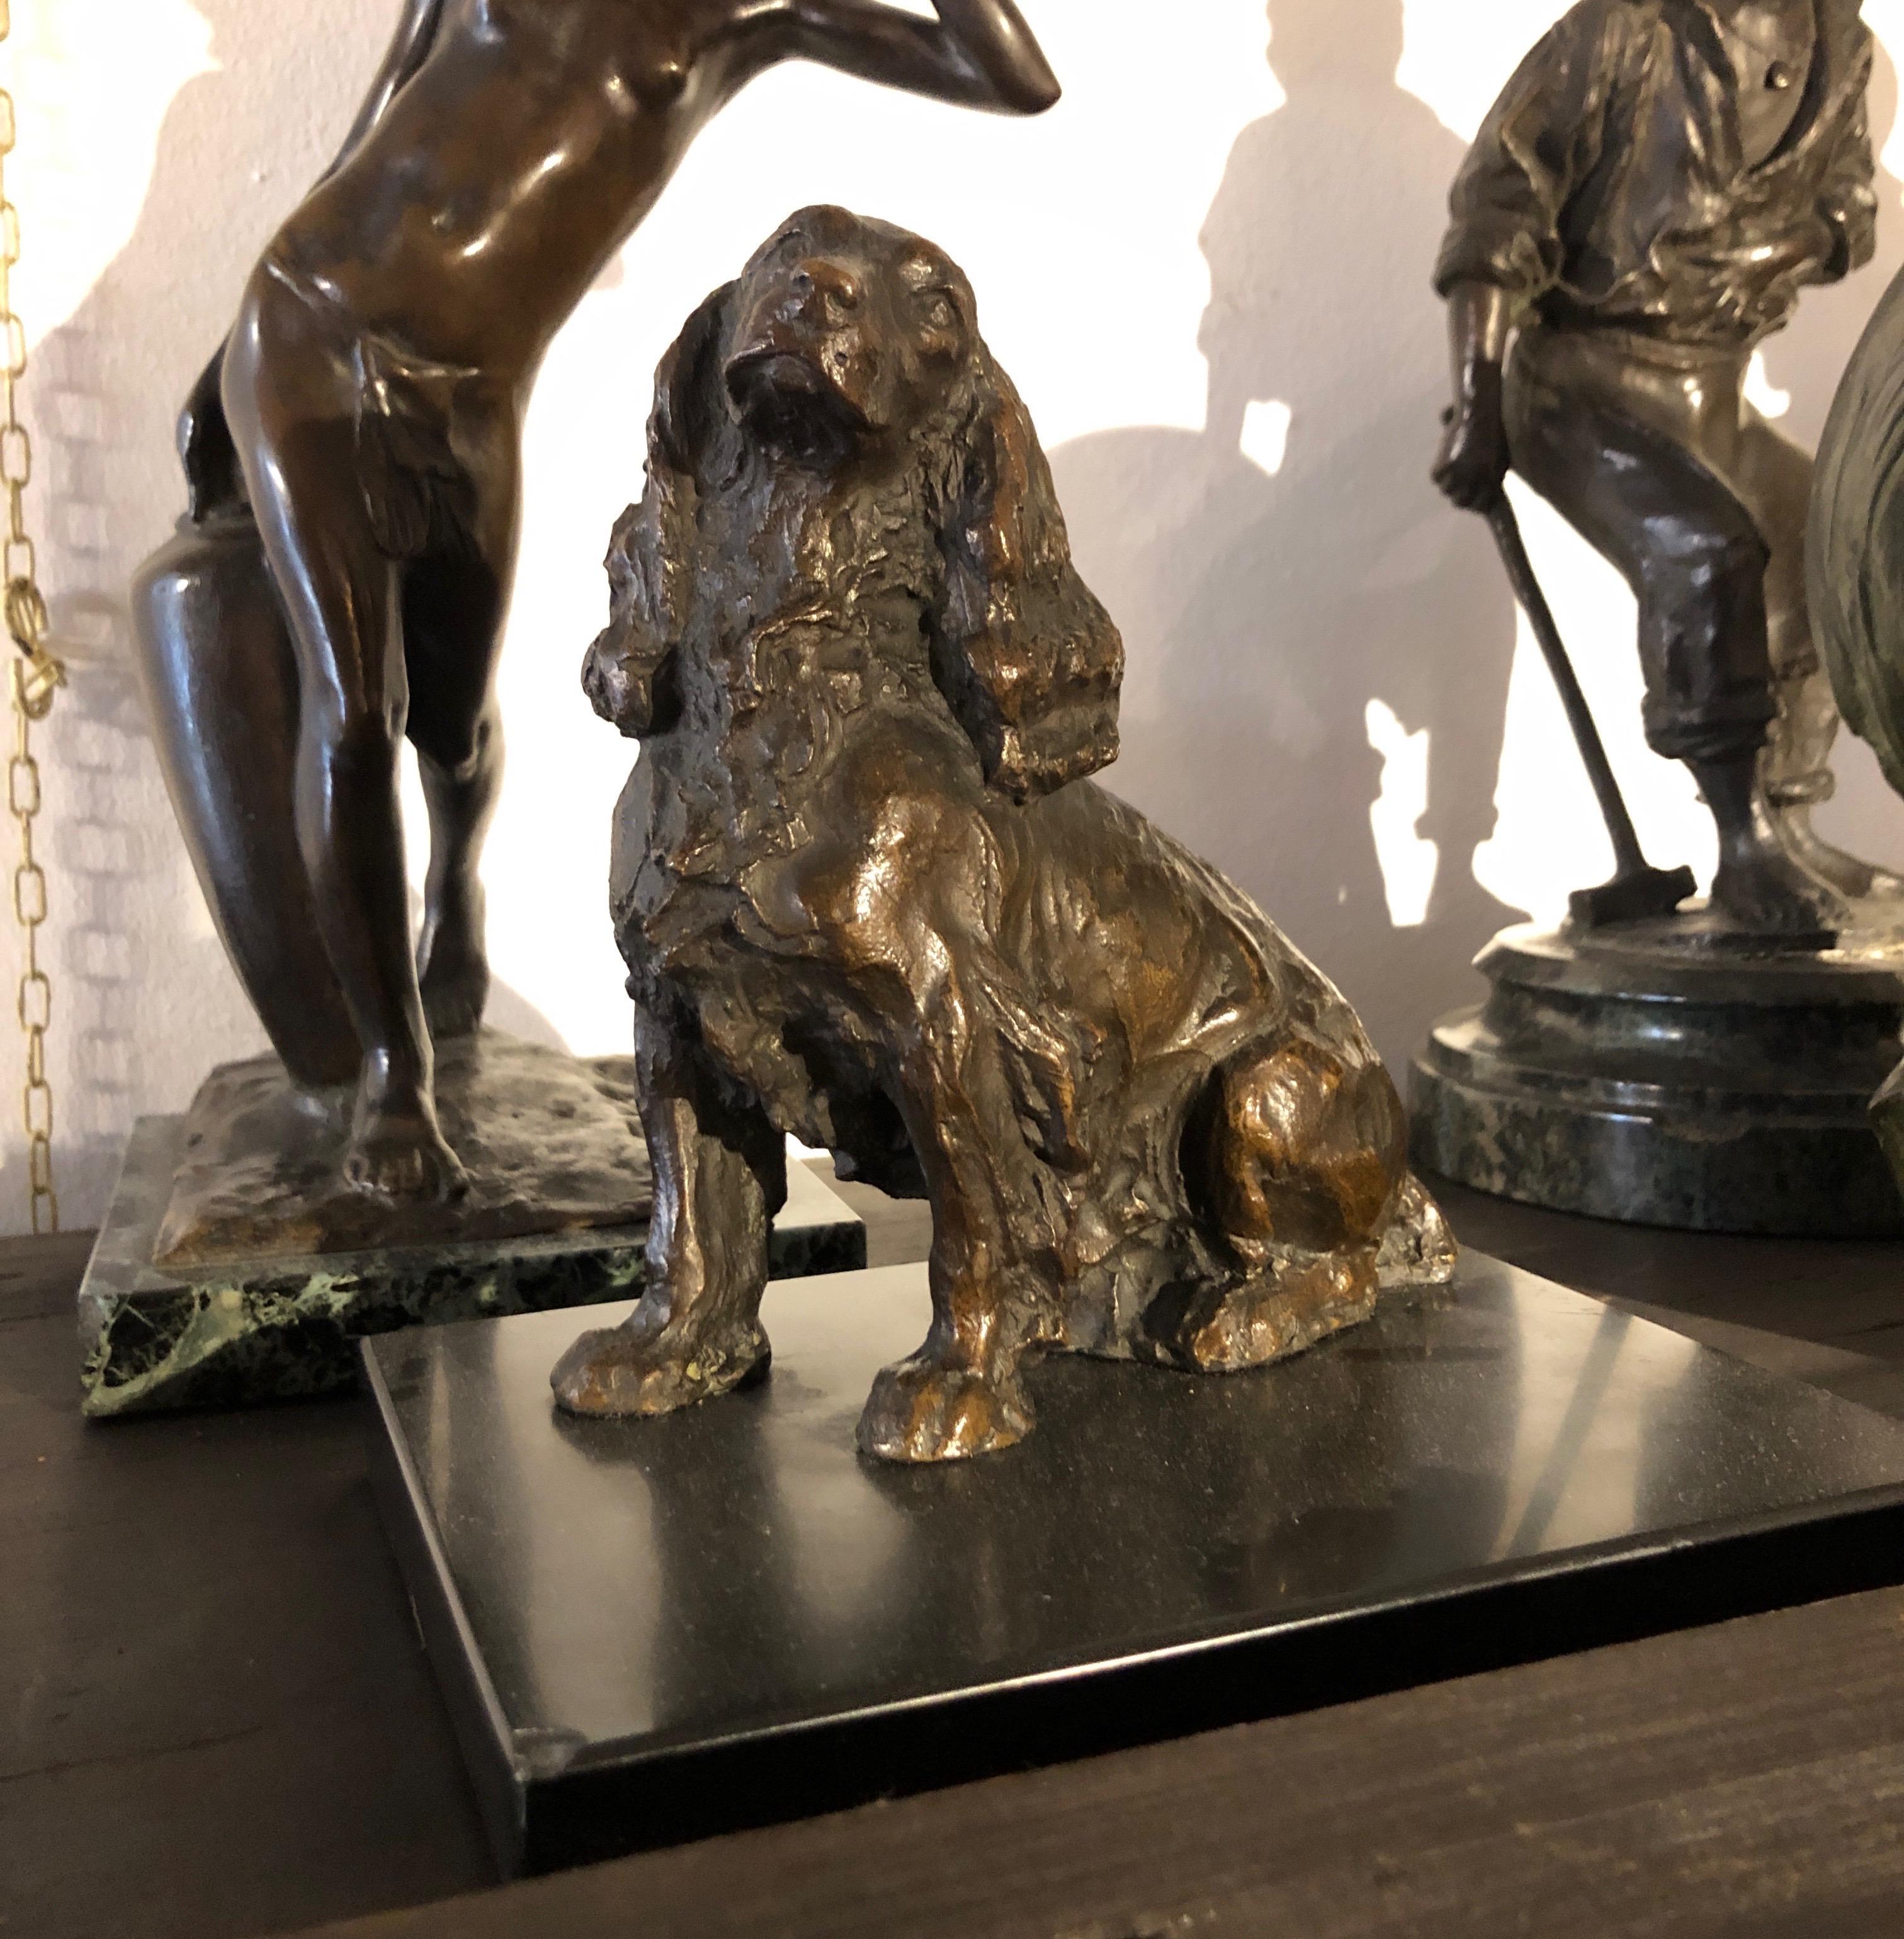 Scultura italiana di cane in bronzo, firmata e datata Leonardo Secchi 1942, raffigurante un Cocker Spaniel seduto. La fusione di bronzo  in terra poggia su base in marmo nero raffigurante un cocker seduto. La figura animalier è in ottimo stato di